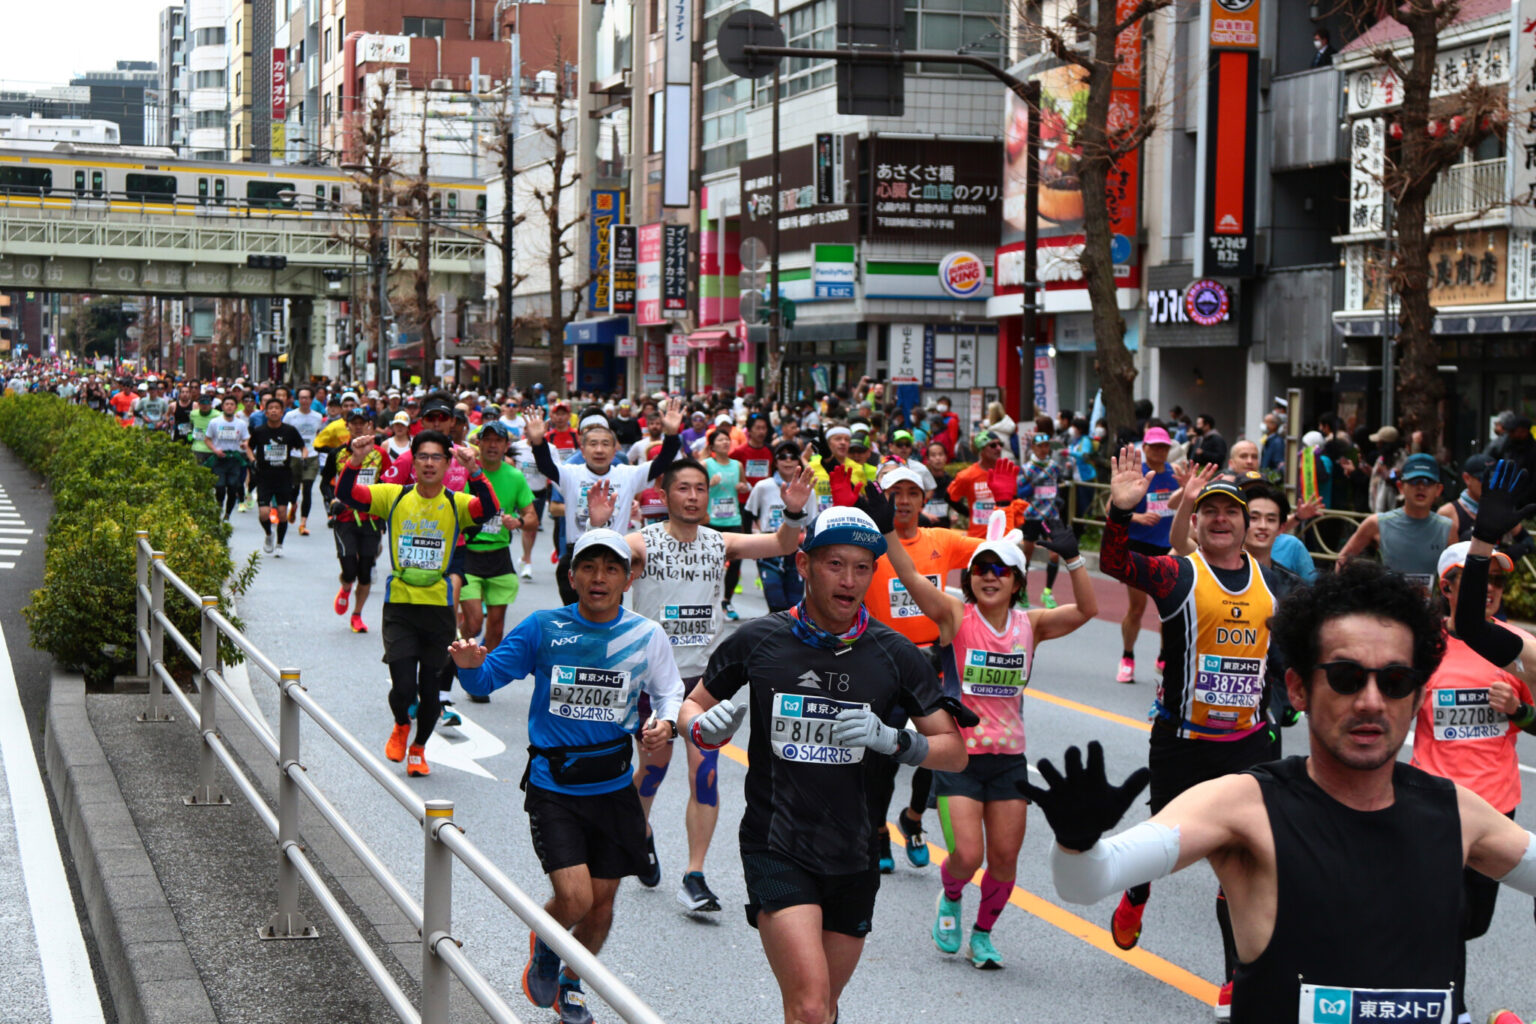 レース中は写真撮影や音楽を聴きながらの参加もOK。楽しい雰囲気の中、ランナーの笑顔も絶えない。©東京マラソン財団